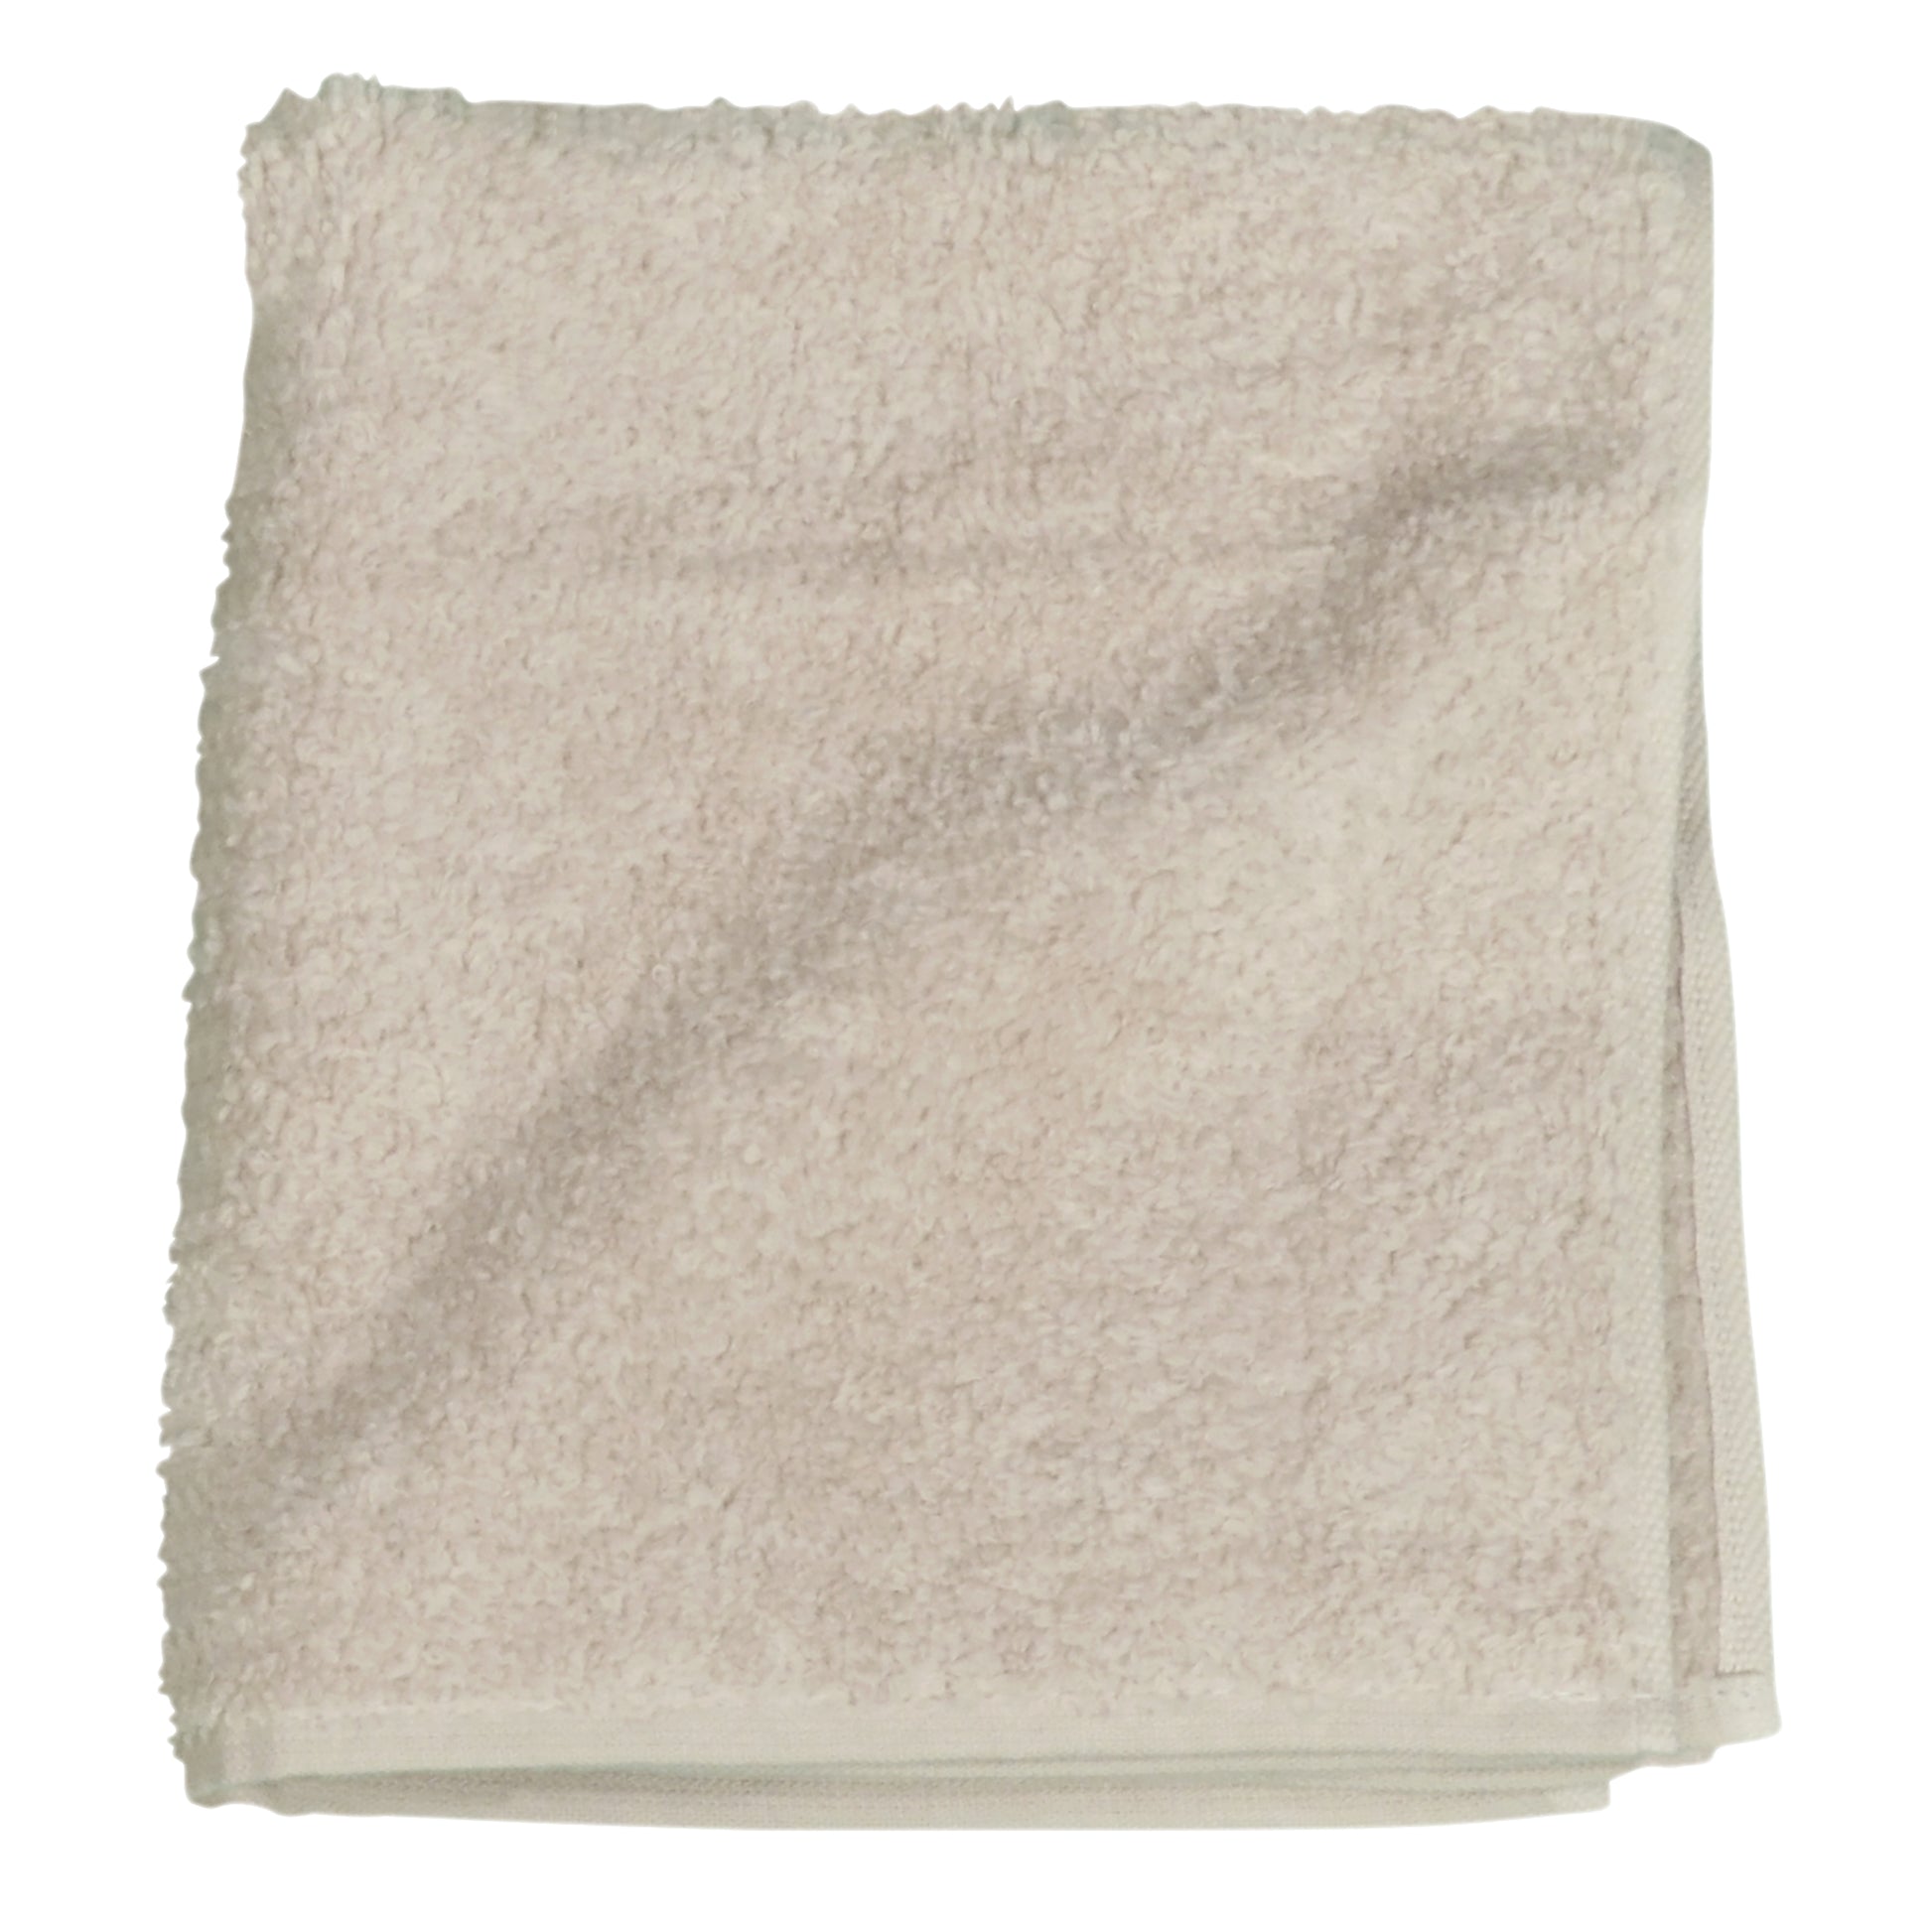 Uchino Zero Twist Towel